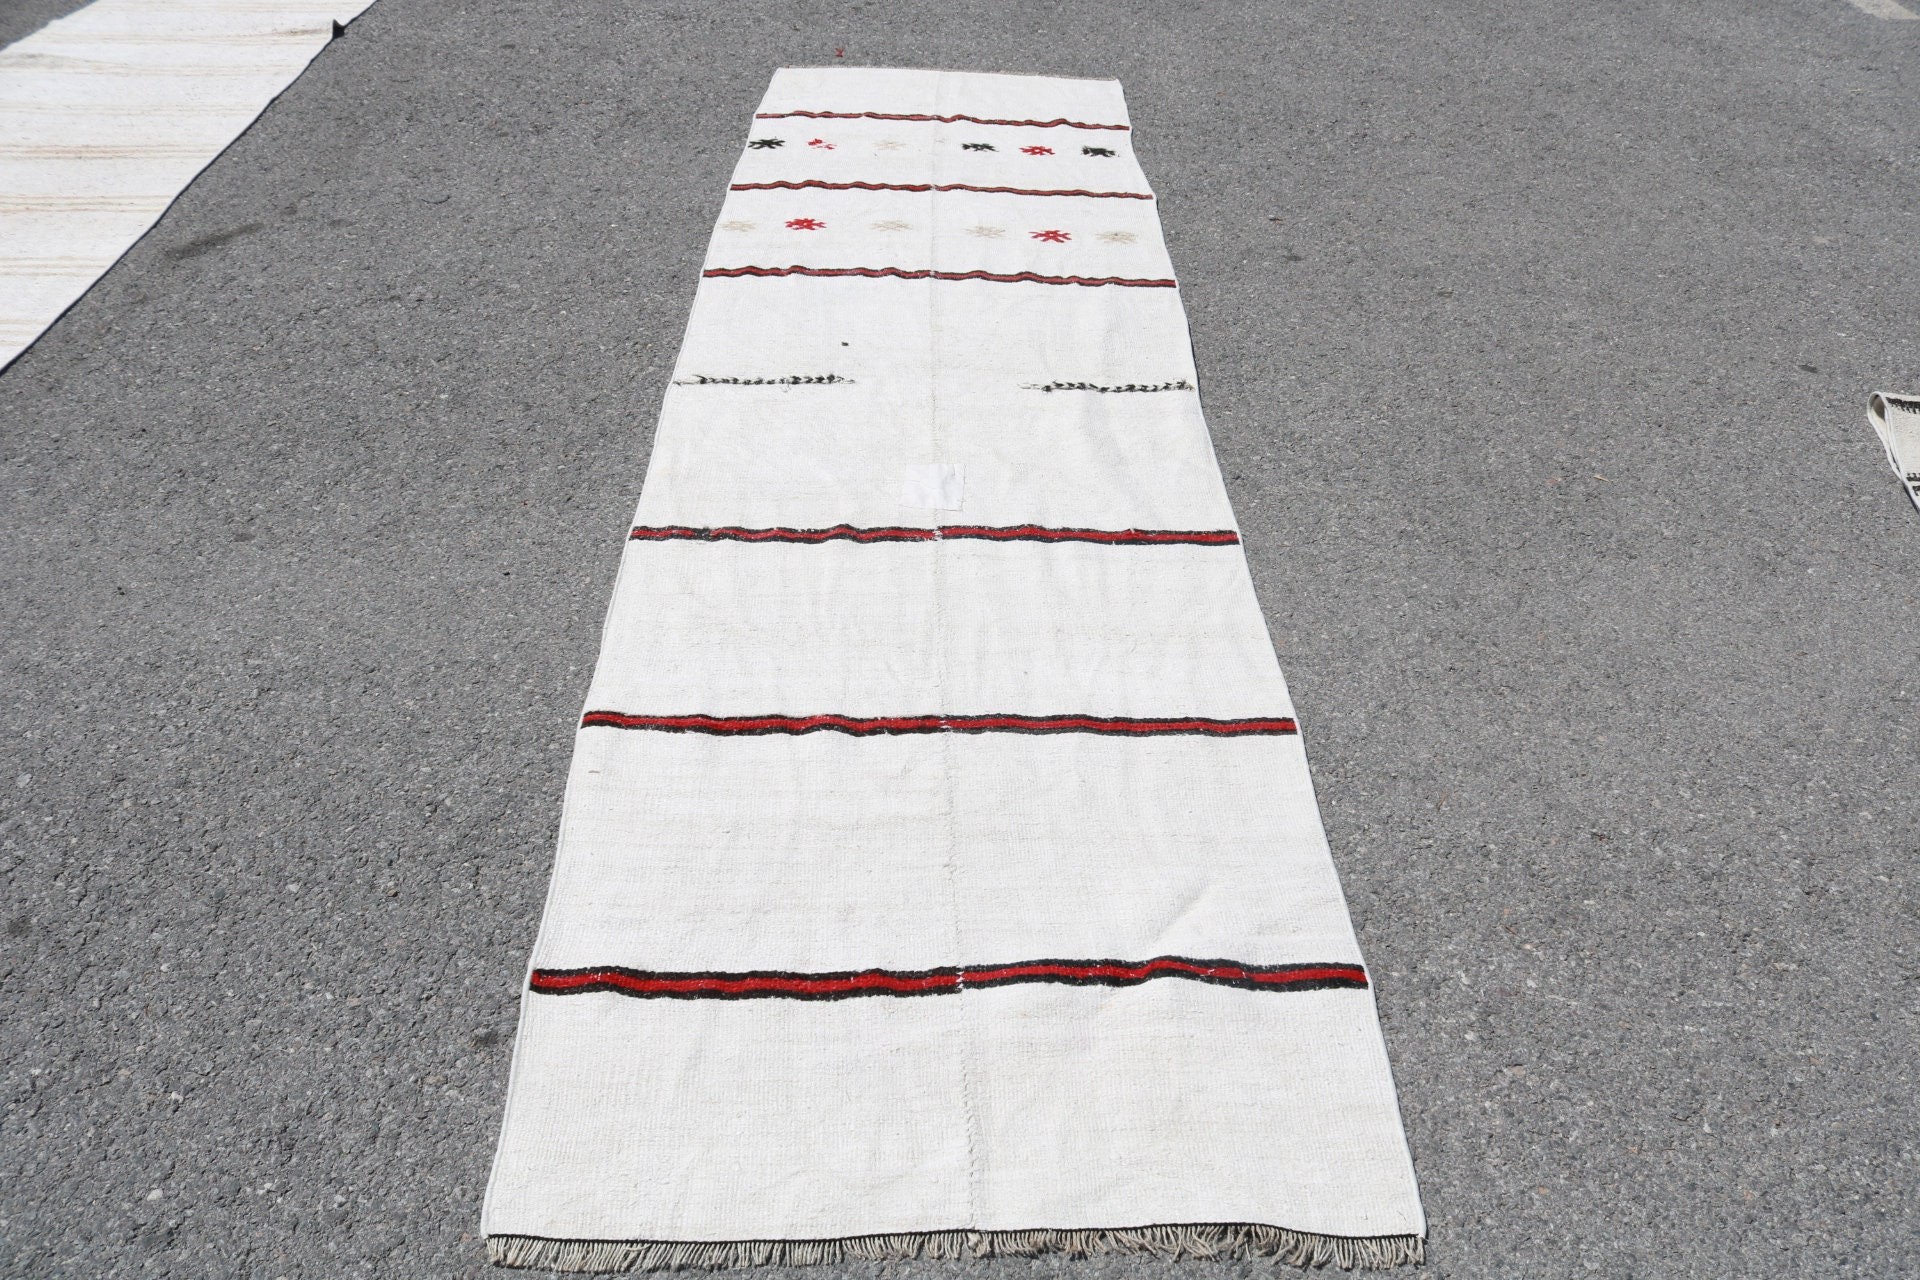 Turkish Rug, Stair Rugs, Oushak Rug, Vintage Rug, Kitchen Rugs, Moroccan Rugs, Old Rug, Custom Rug, Rugs for Corridor, 3x10.8 ft Runner Rug